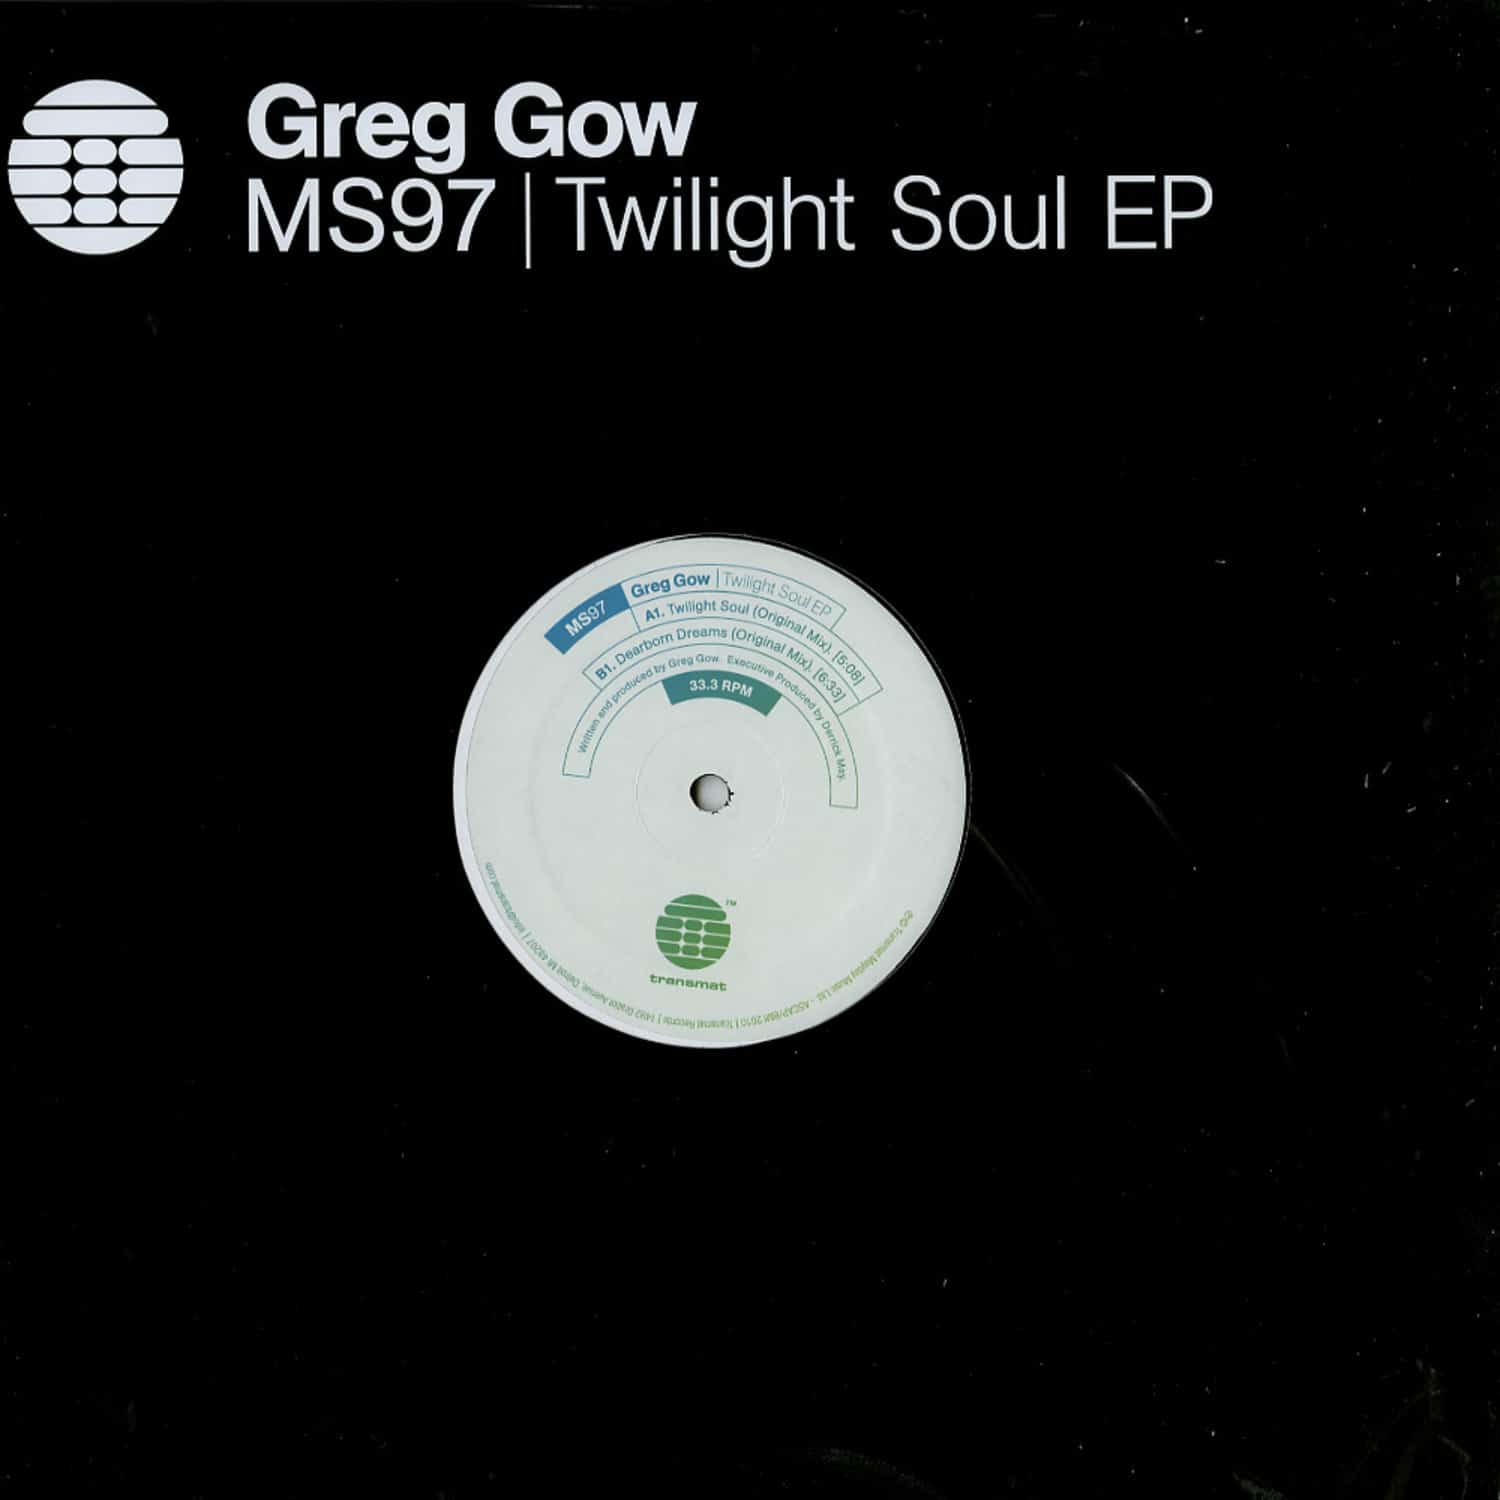 Greg Gow - TWILIGHT SOUL EP